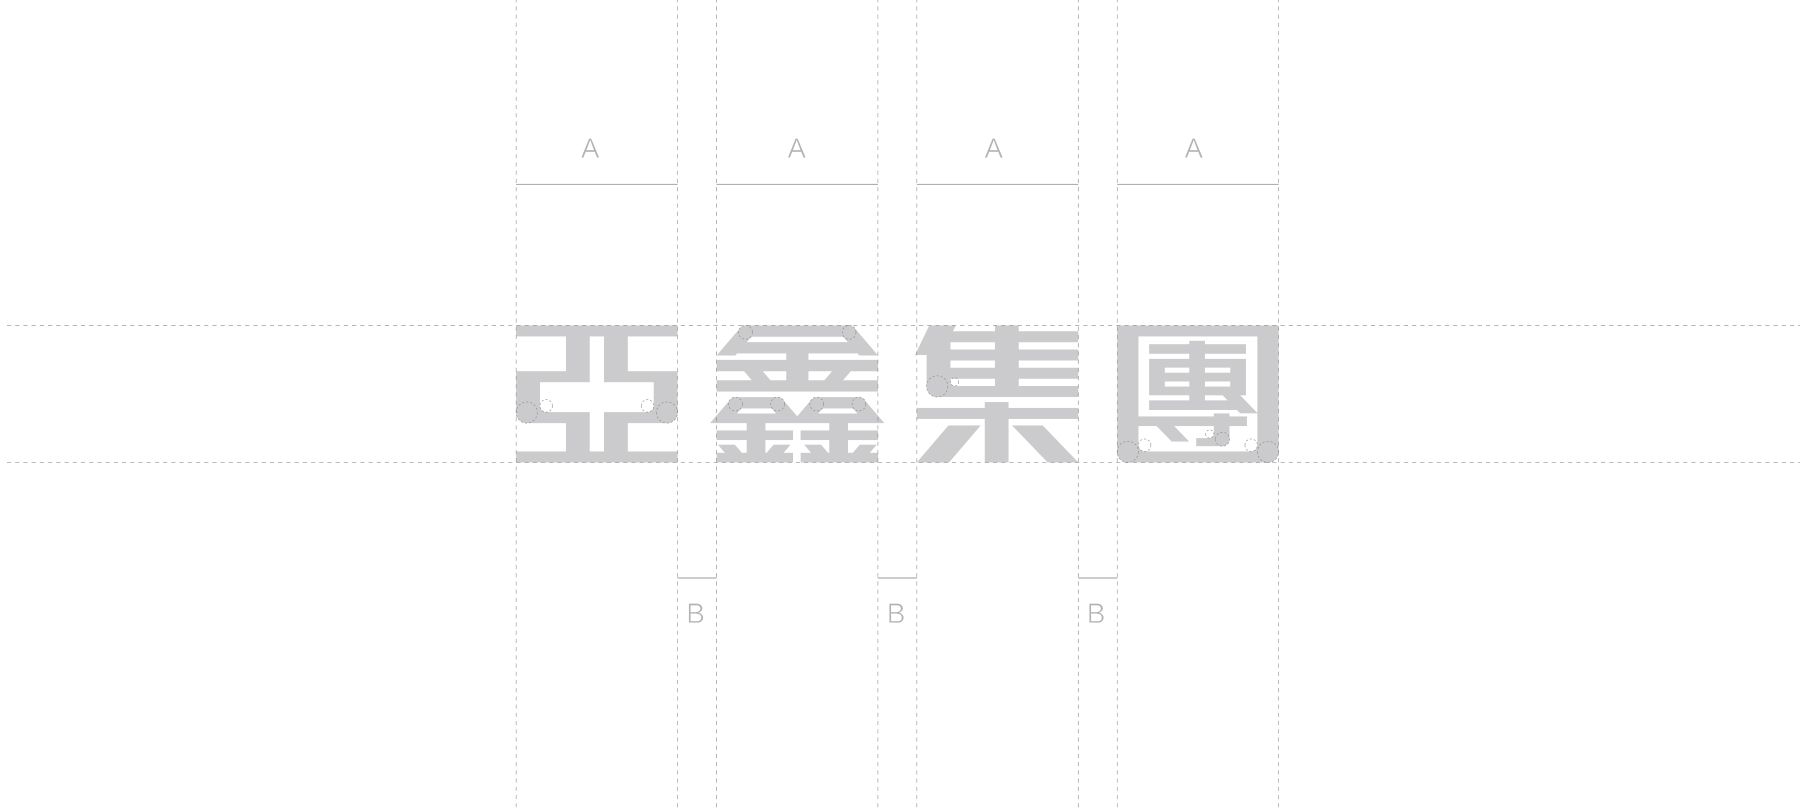 上海品牌设计公司